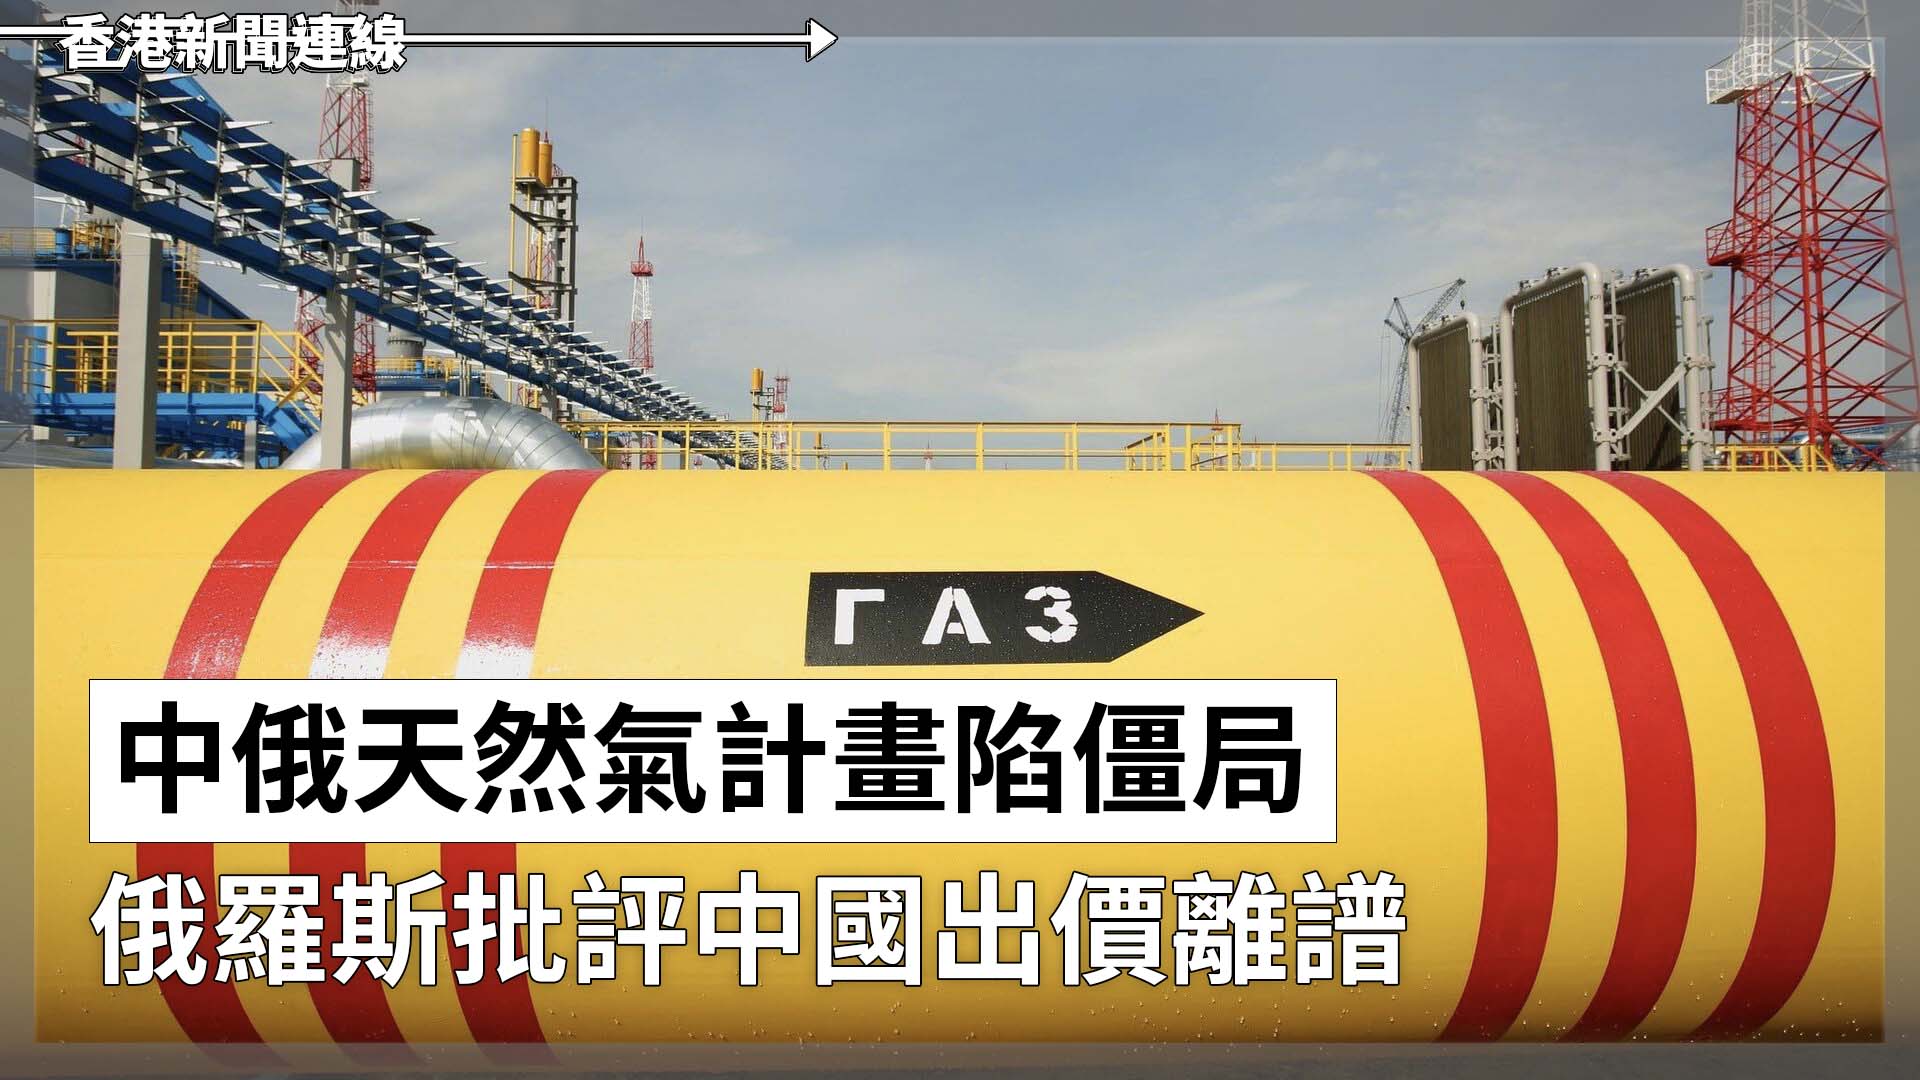 中俄天然氣計畫陷僵局 俄羅斯批評中國出價離譜